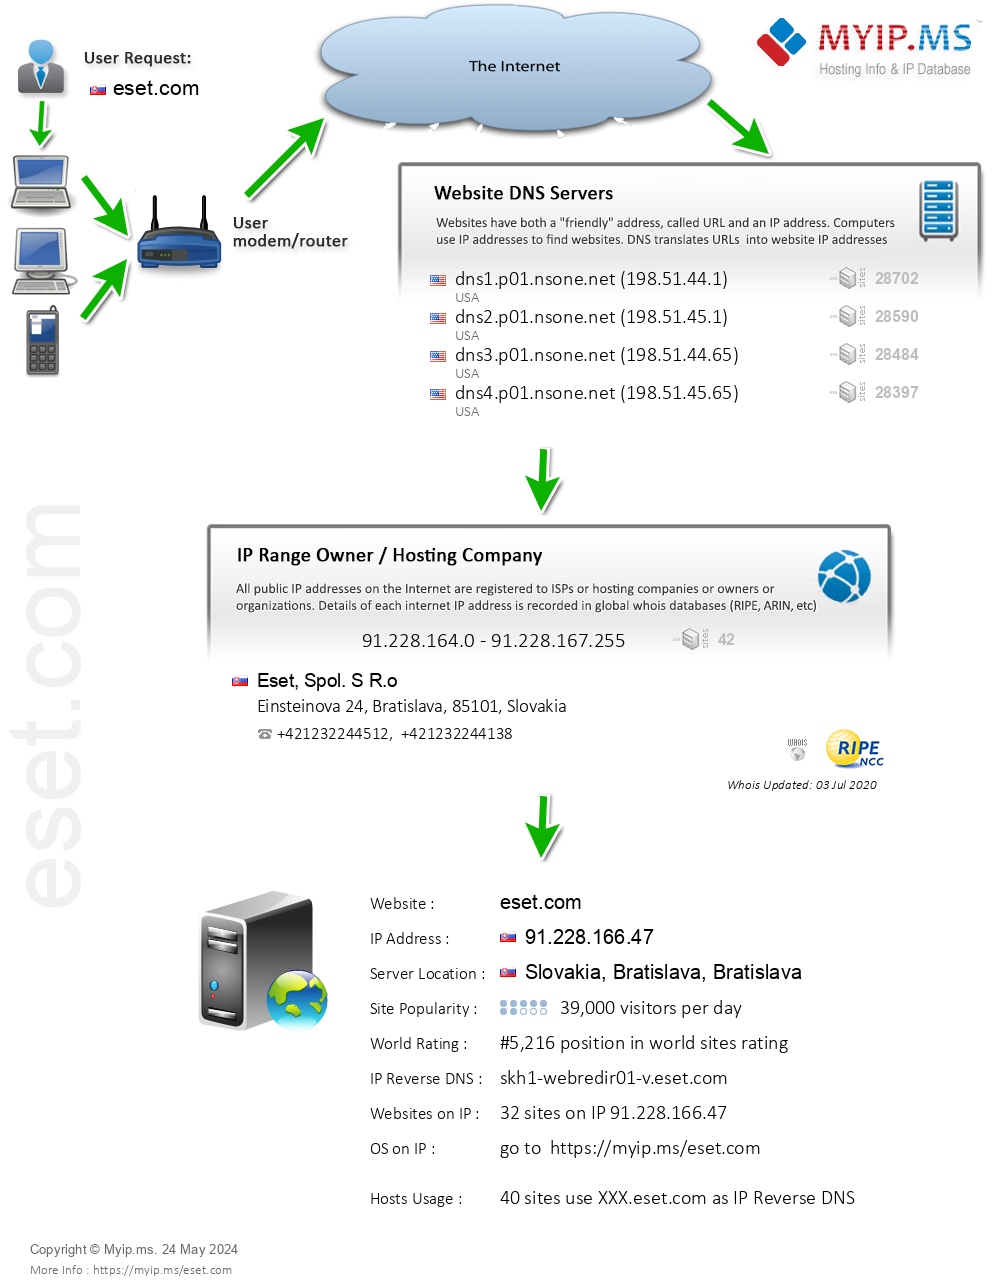 Eset.com - Website Hosting Visual IP Diagram